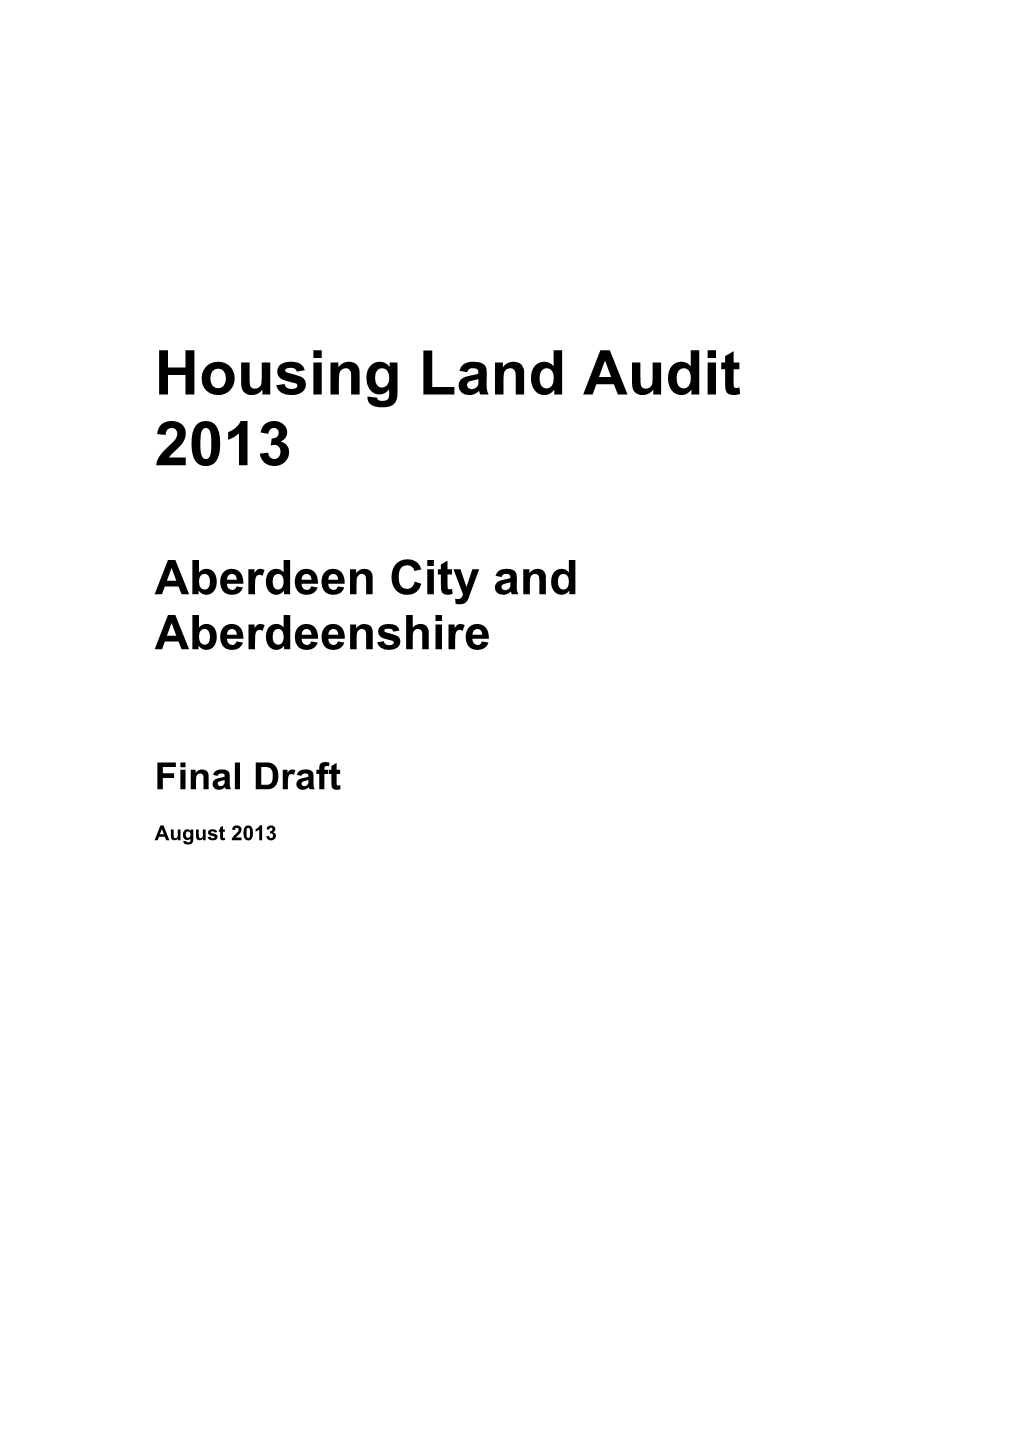 Aberdeen City and Aberdeenshire Housing Land Audit 2013